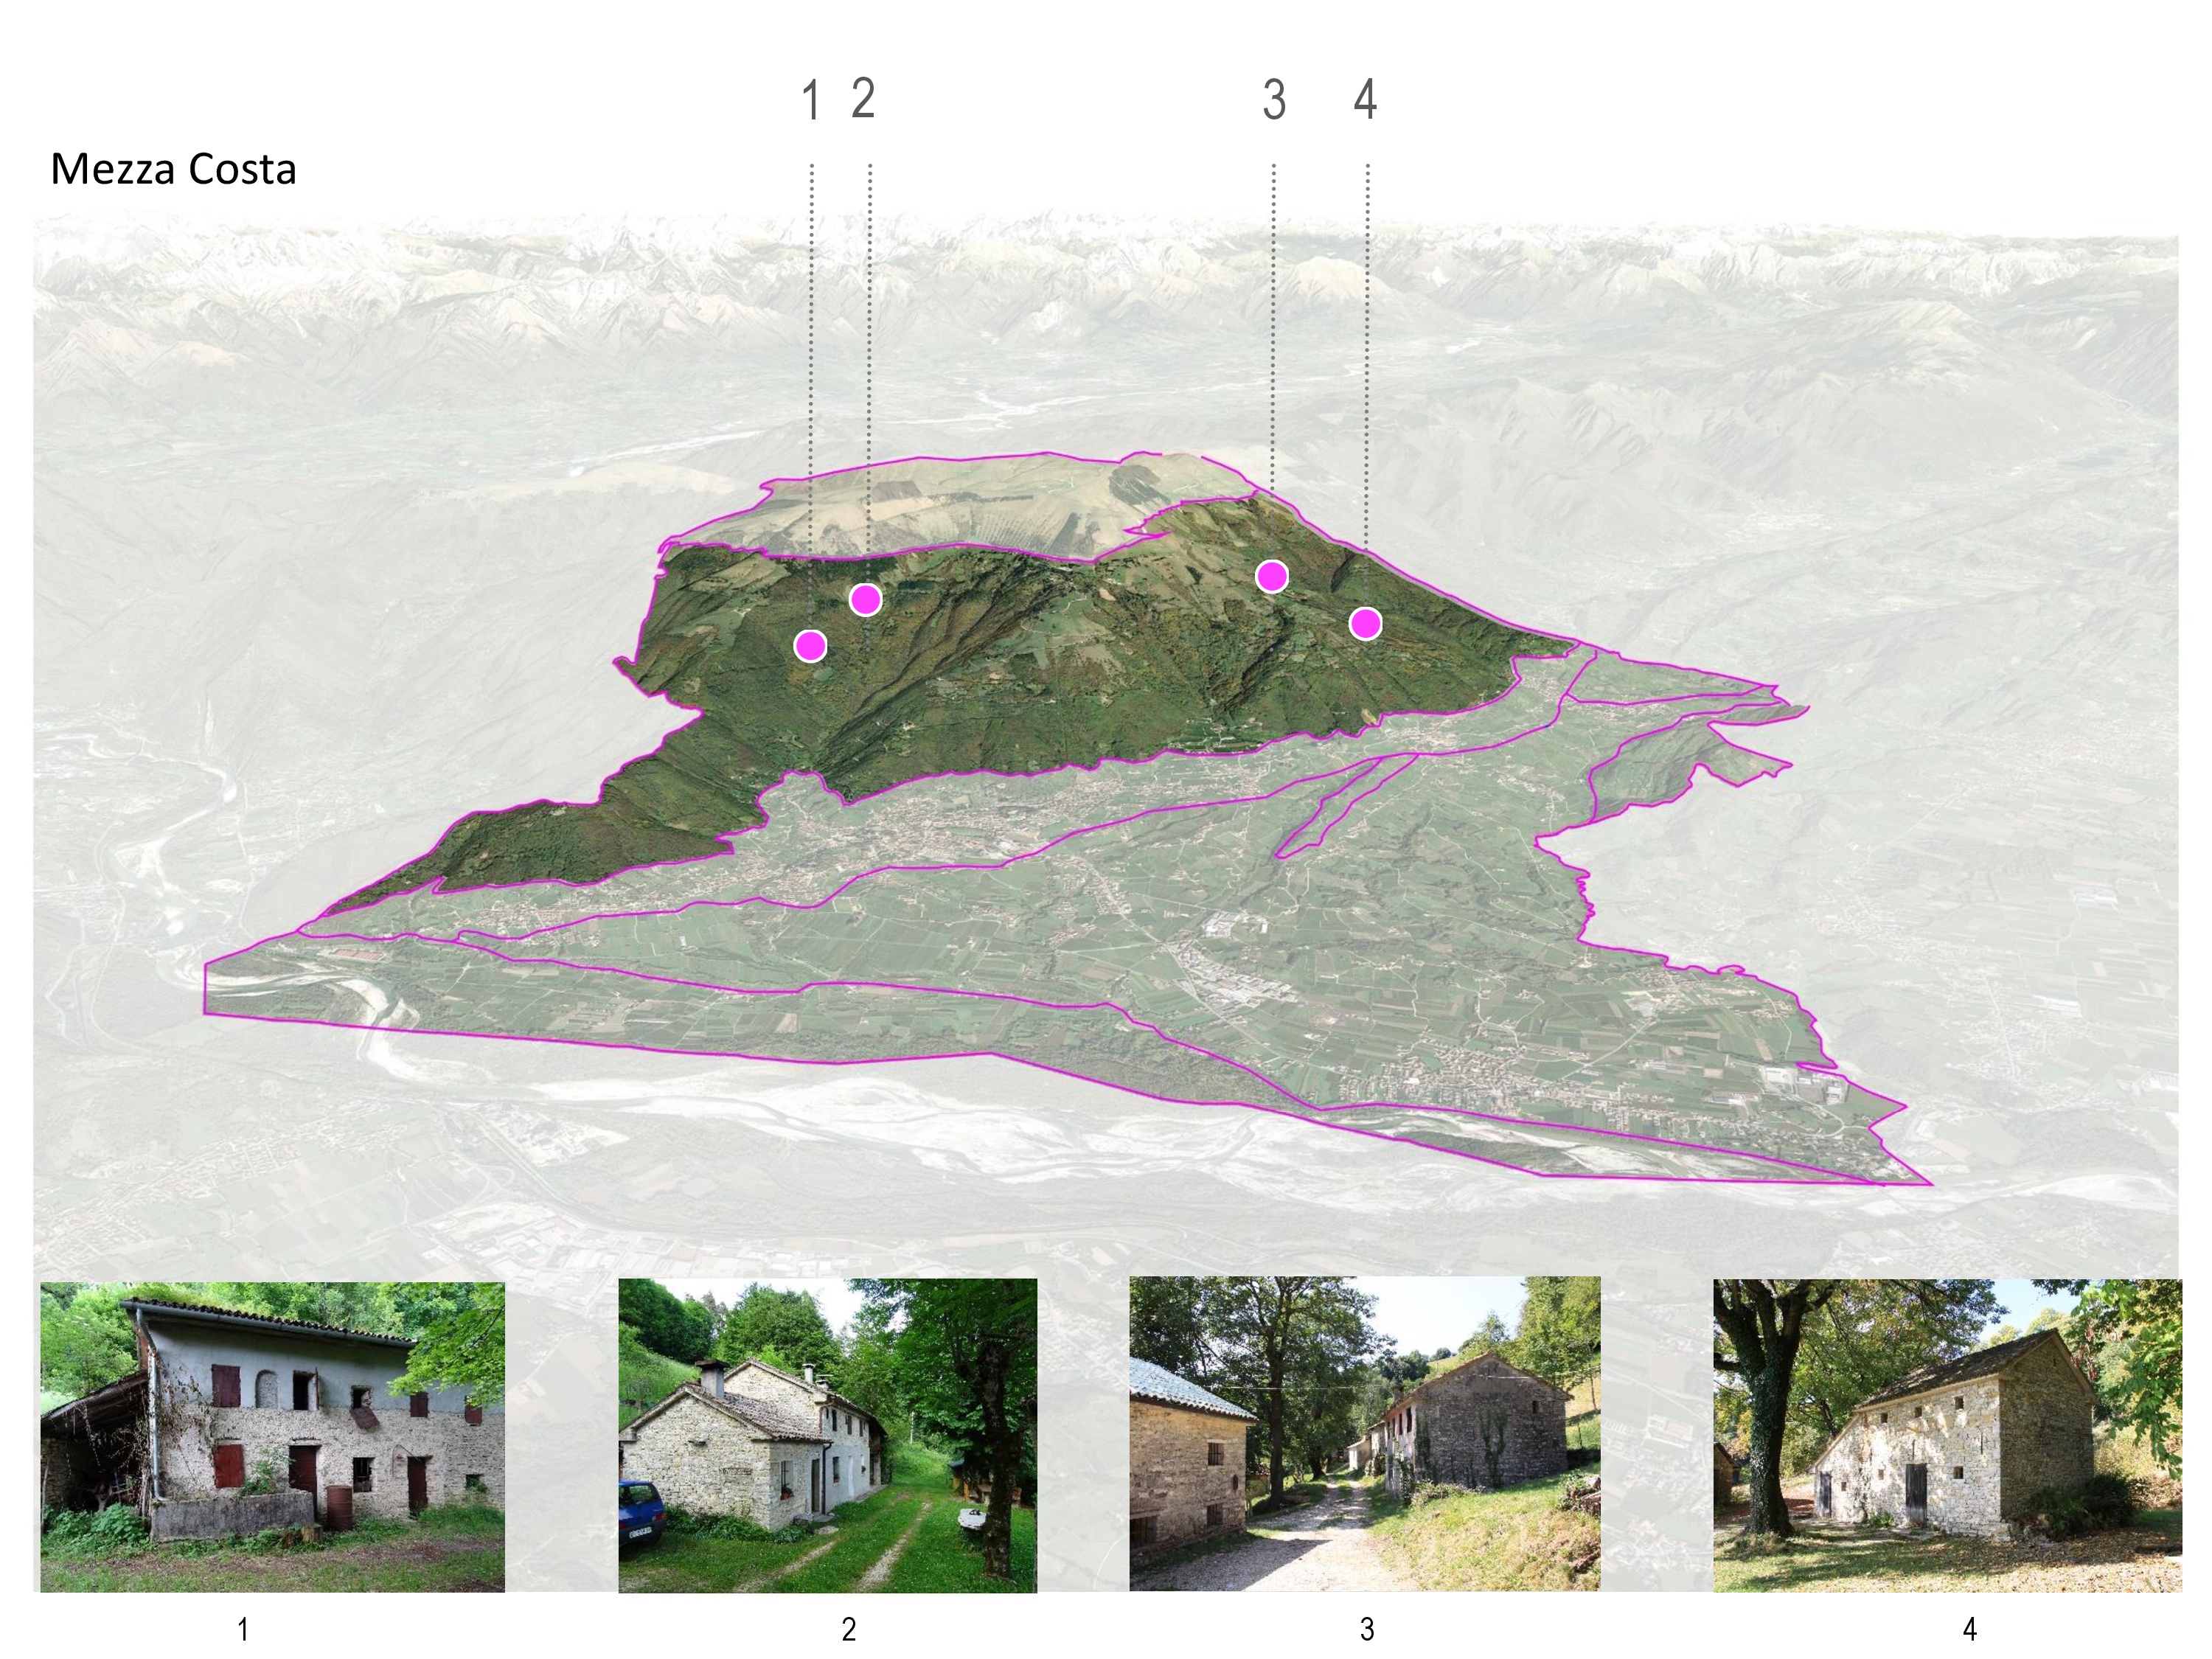 Lettura geomorfologica @ Prontuario della qualità architettonica e della mitigazione ambientale